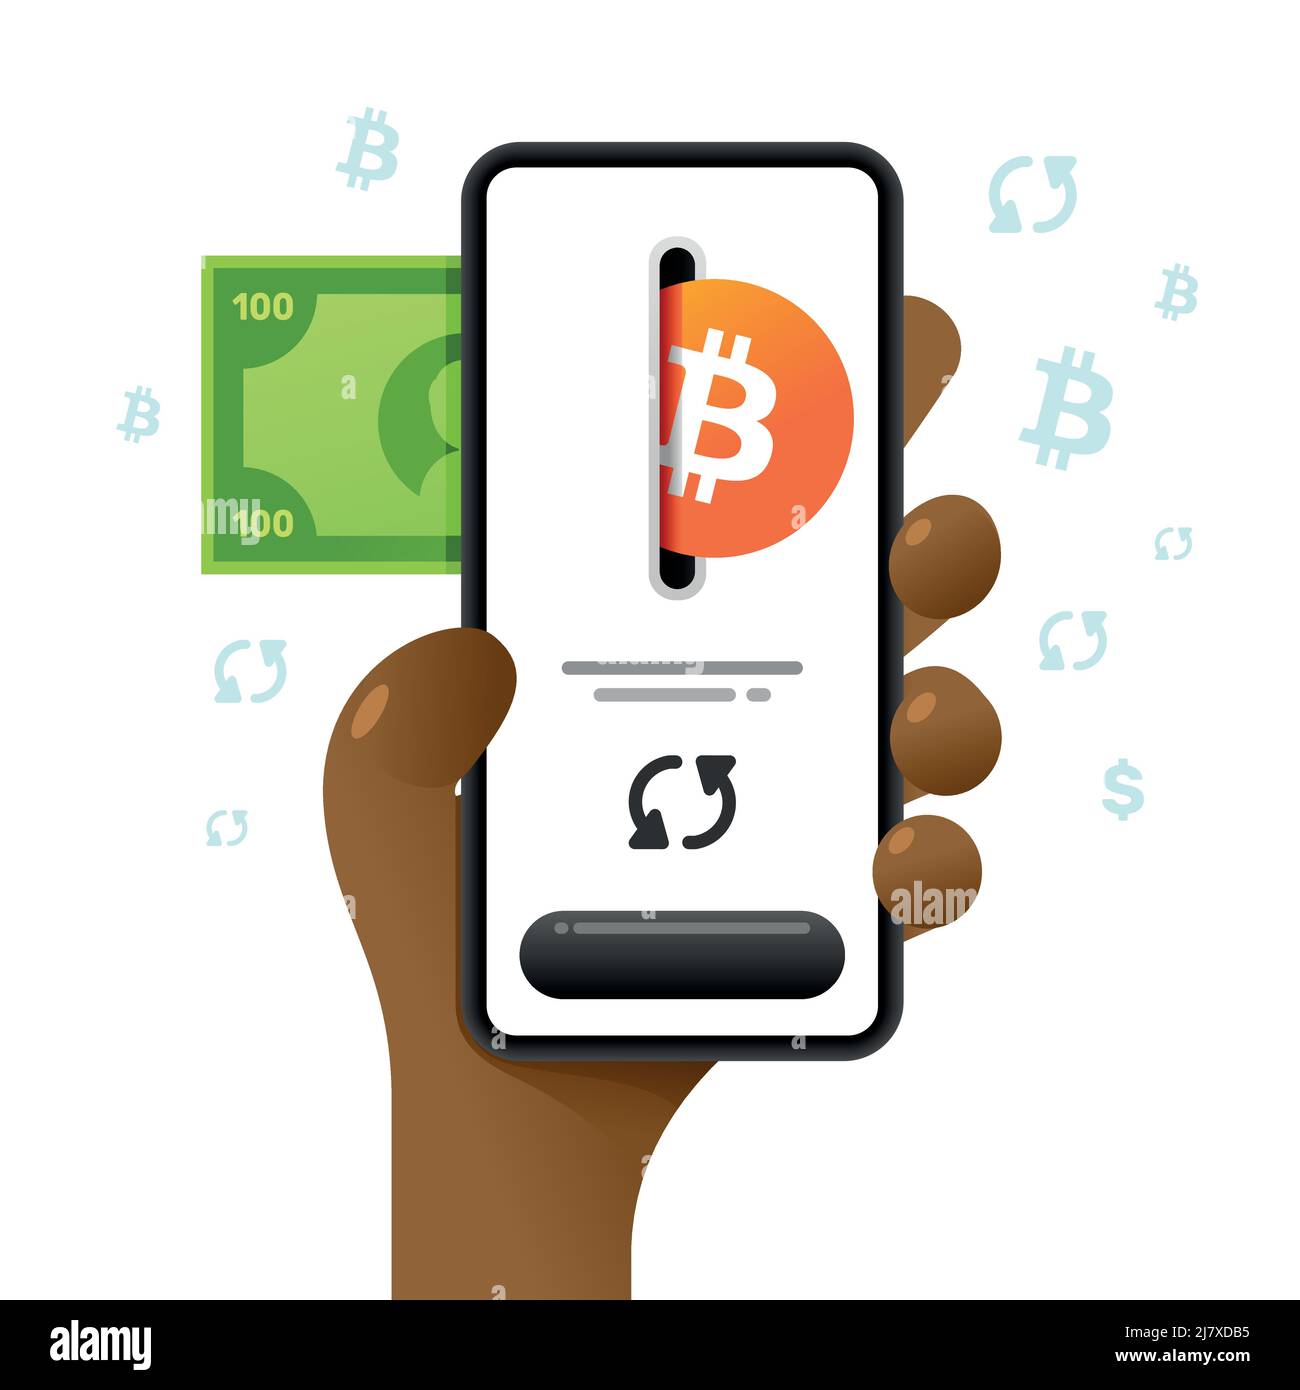 Une maquette de smartphone dans la main. Opération d'échange. Portefeuille Bitcoin et argent comptant. Illustration de crypto-monnaie vectorielle colorée Illustration de Vecteur